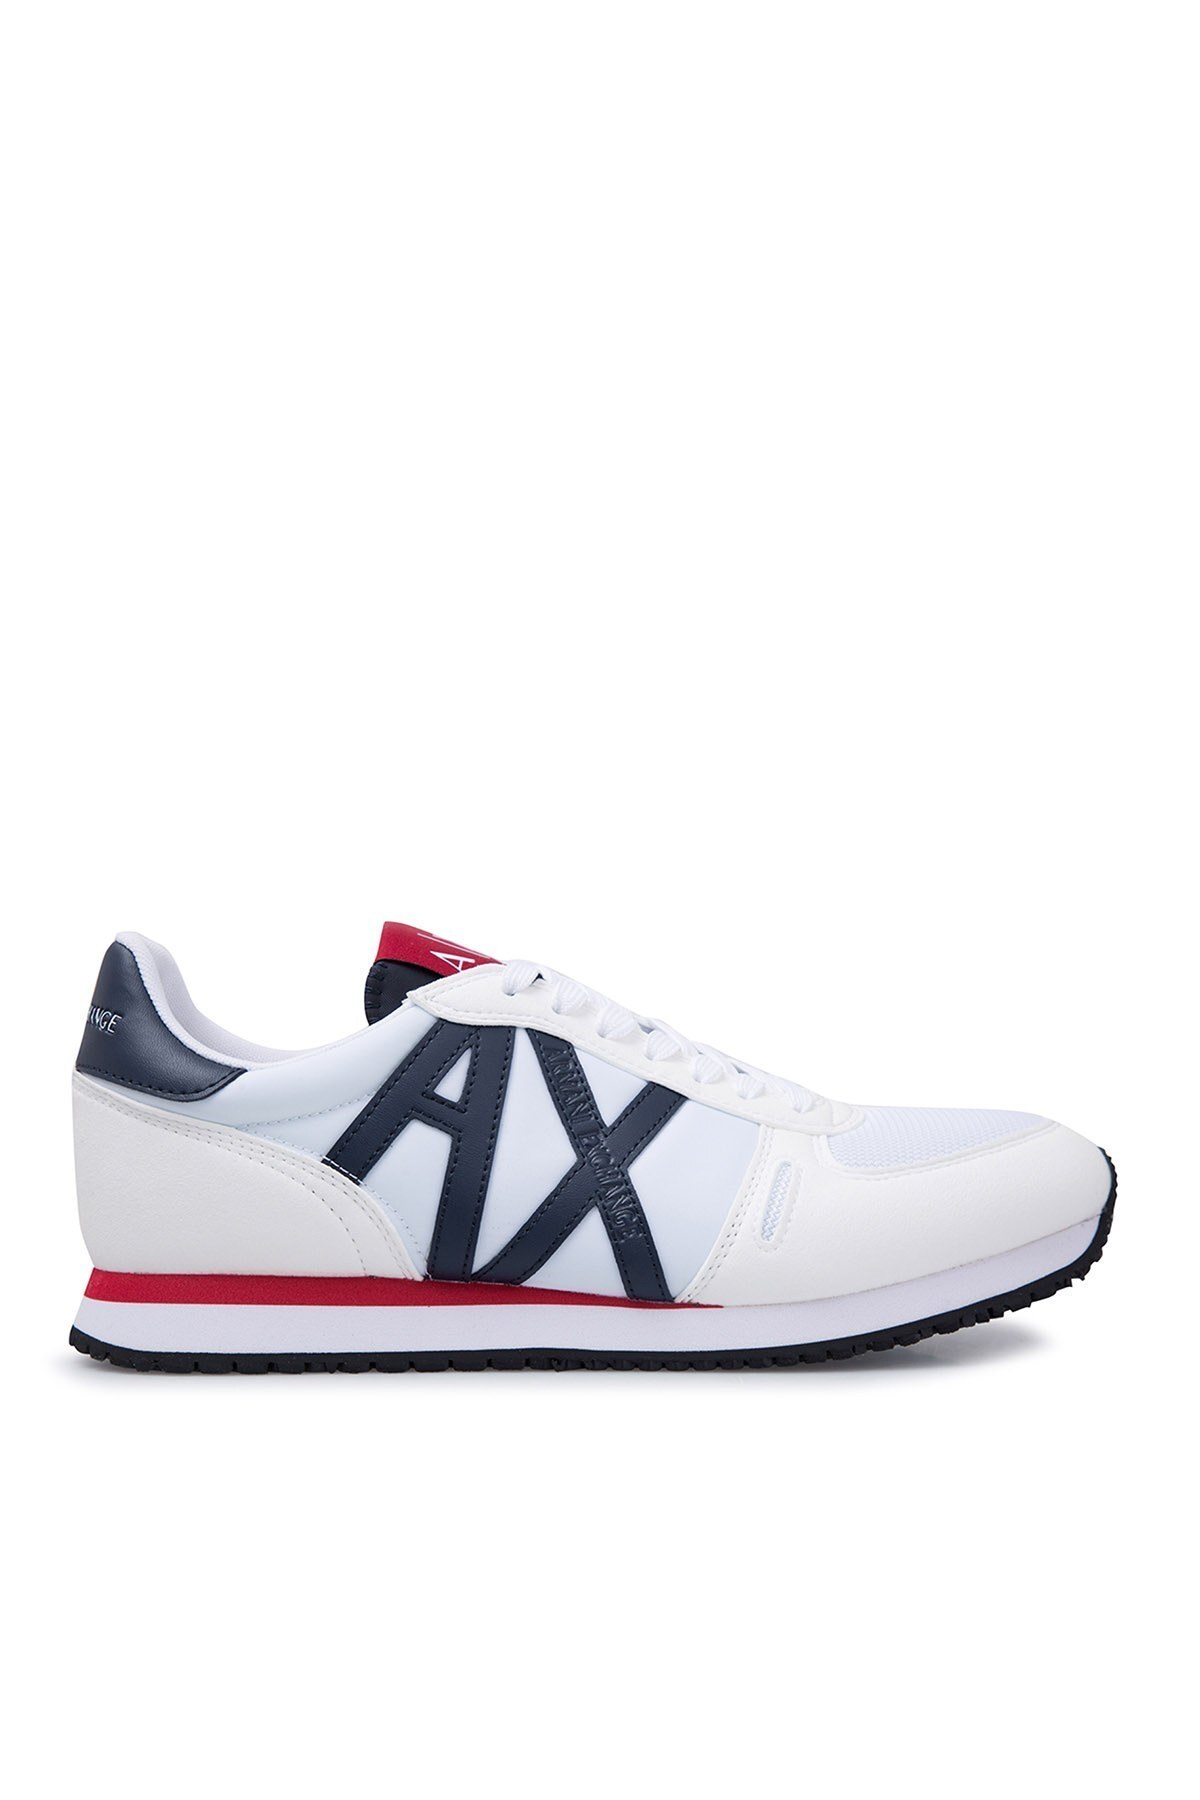 Armani Exchange Erkek Ayakkabı XUX017 XV028 B788 BEYAZ-LACİVERT